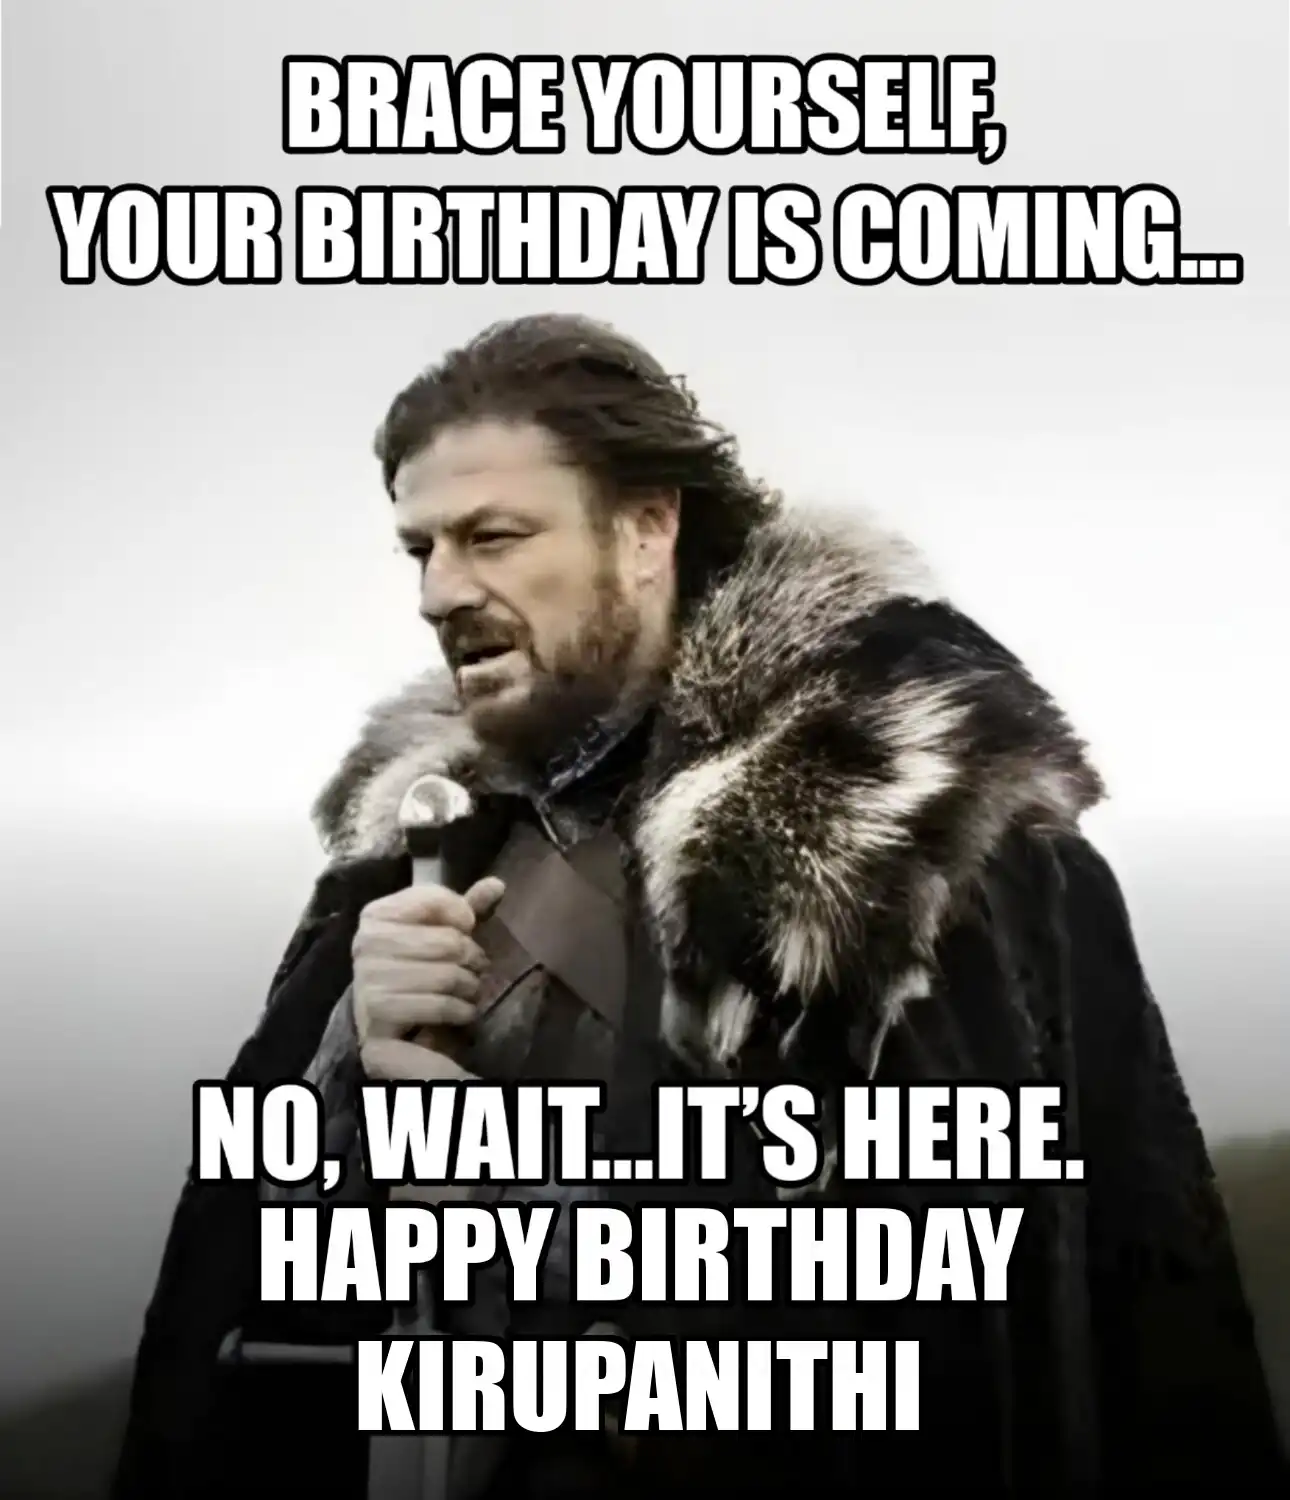 Happy Birthday Kirupanithi Brace Yourself Your Birthday Is Coming Meme